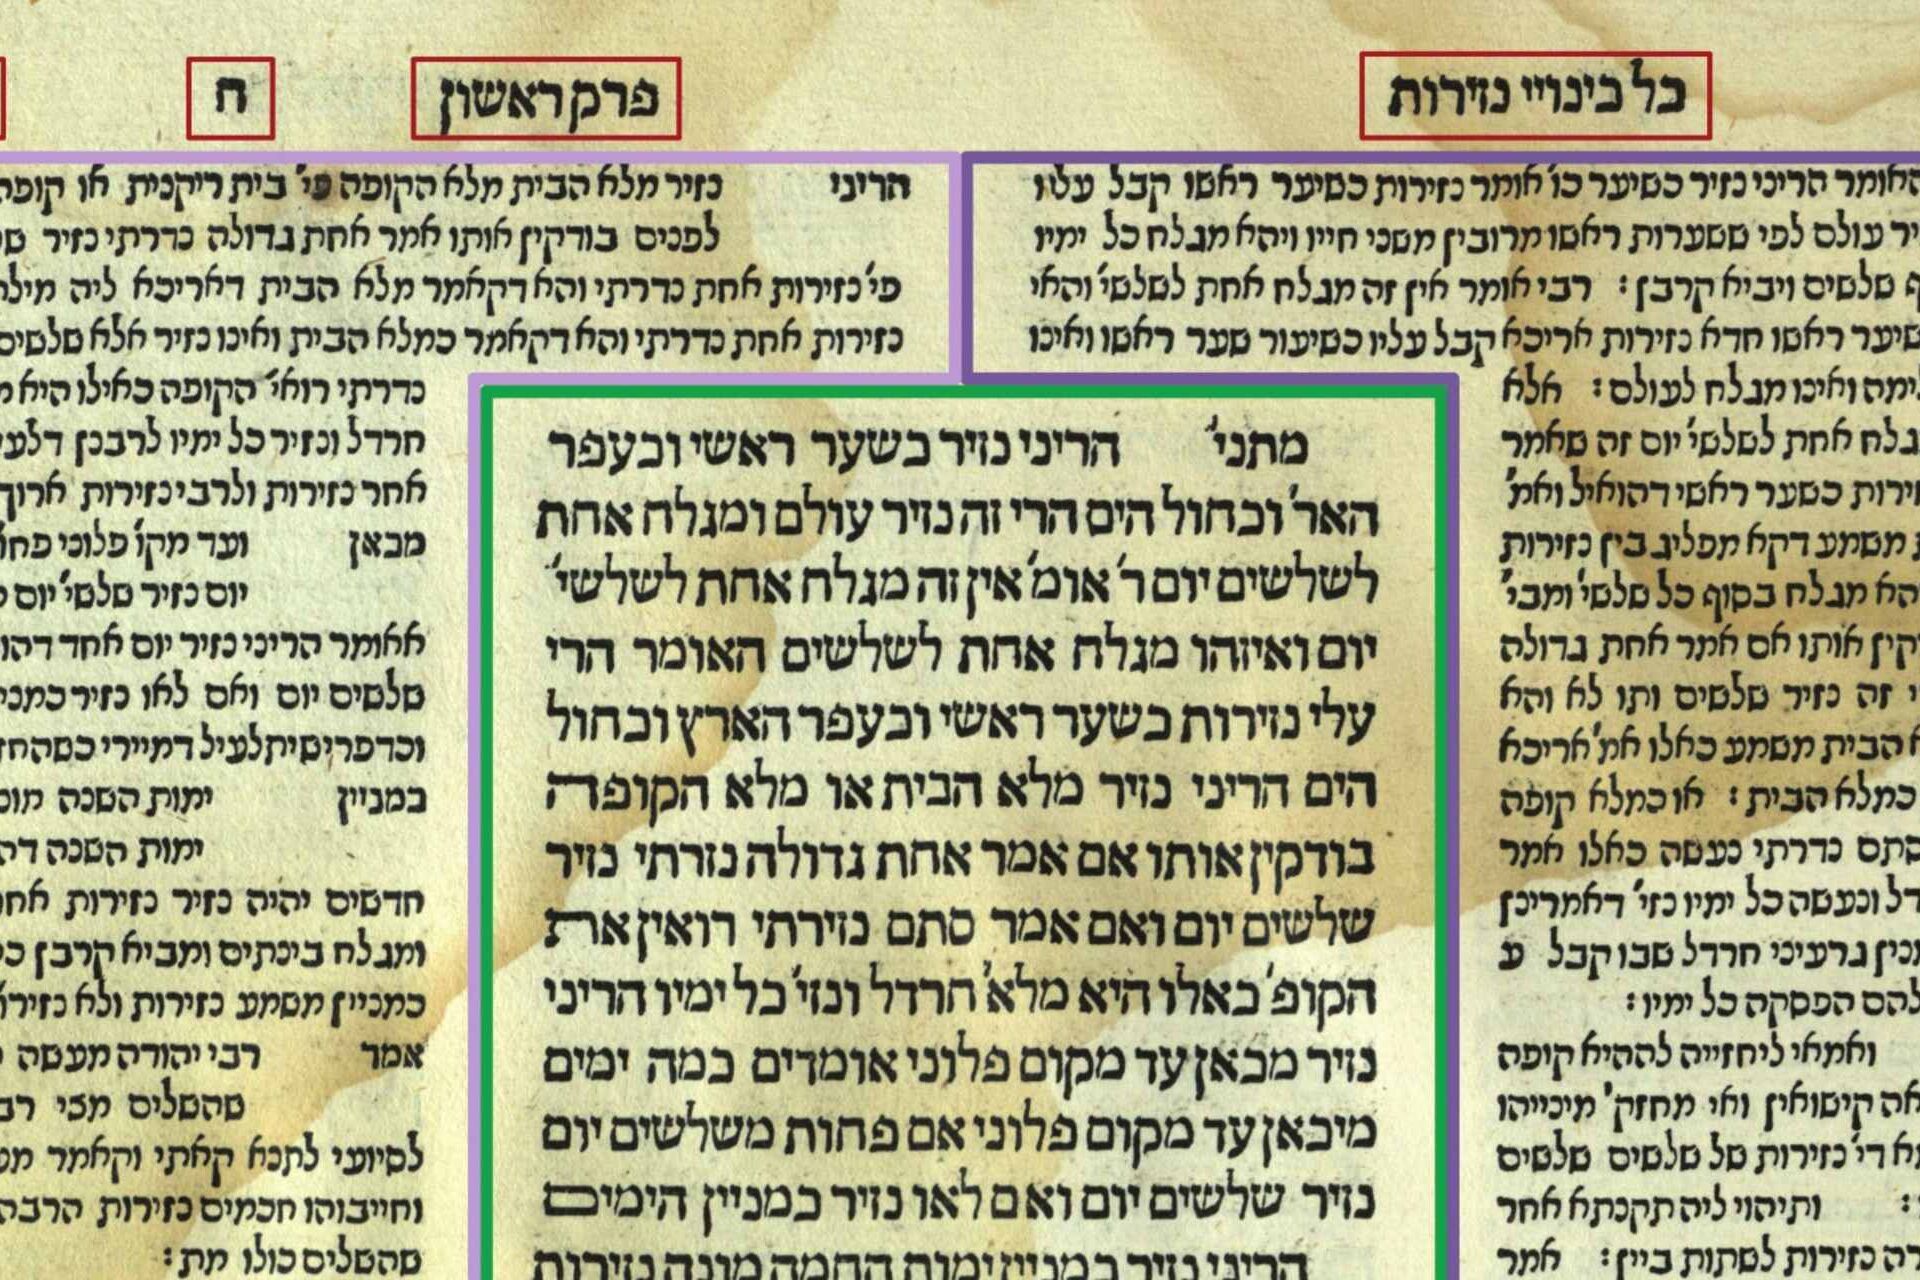 Μια εικόνα από το εβραϊκό Ταλμούδ με τα σχόλια στο περιθώριο